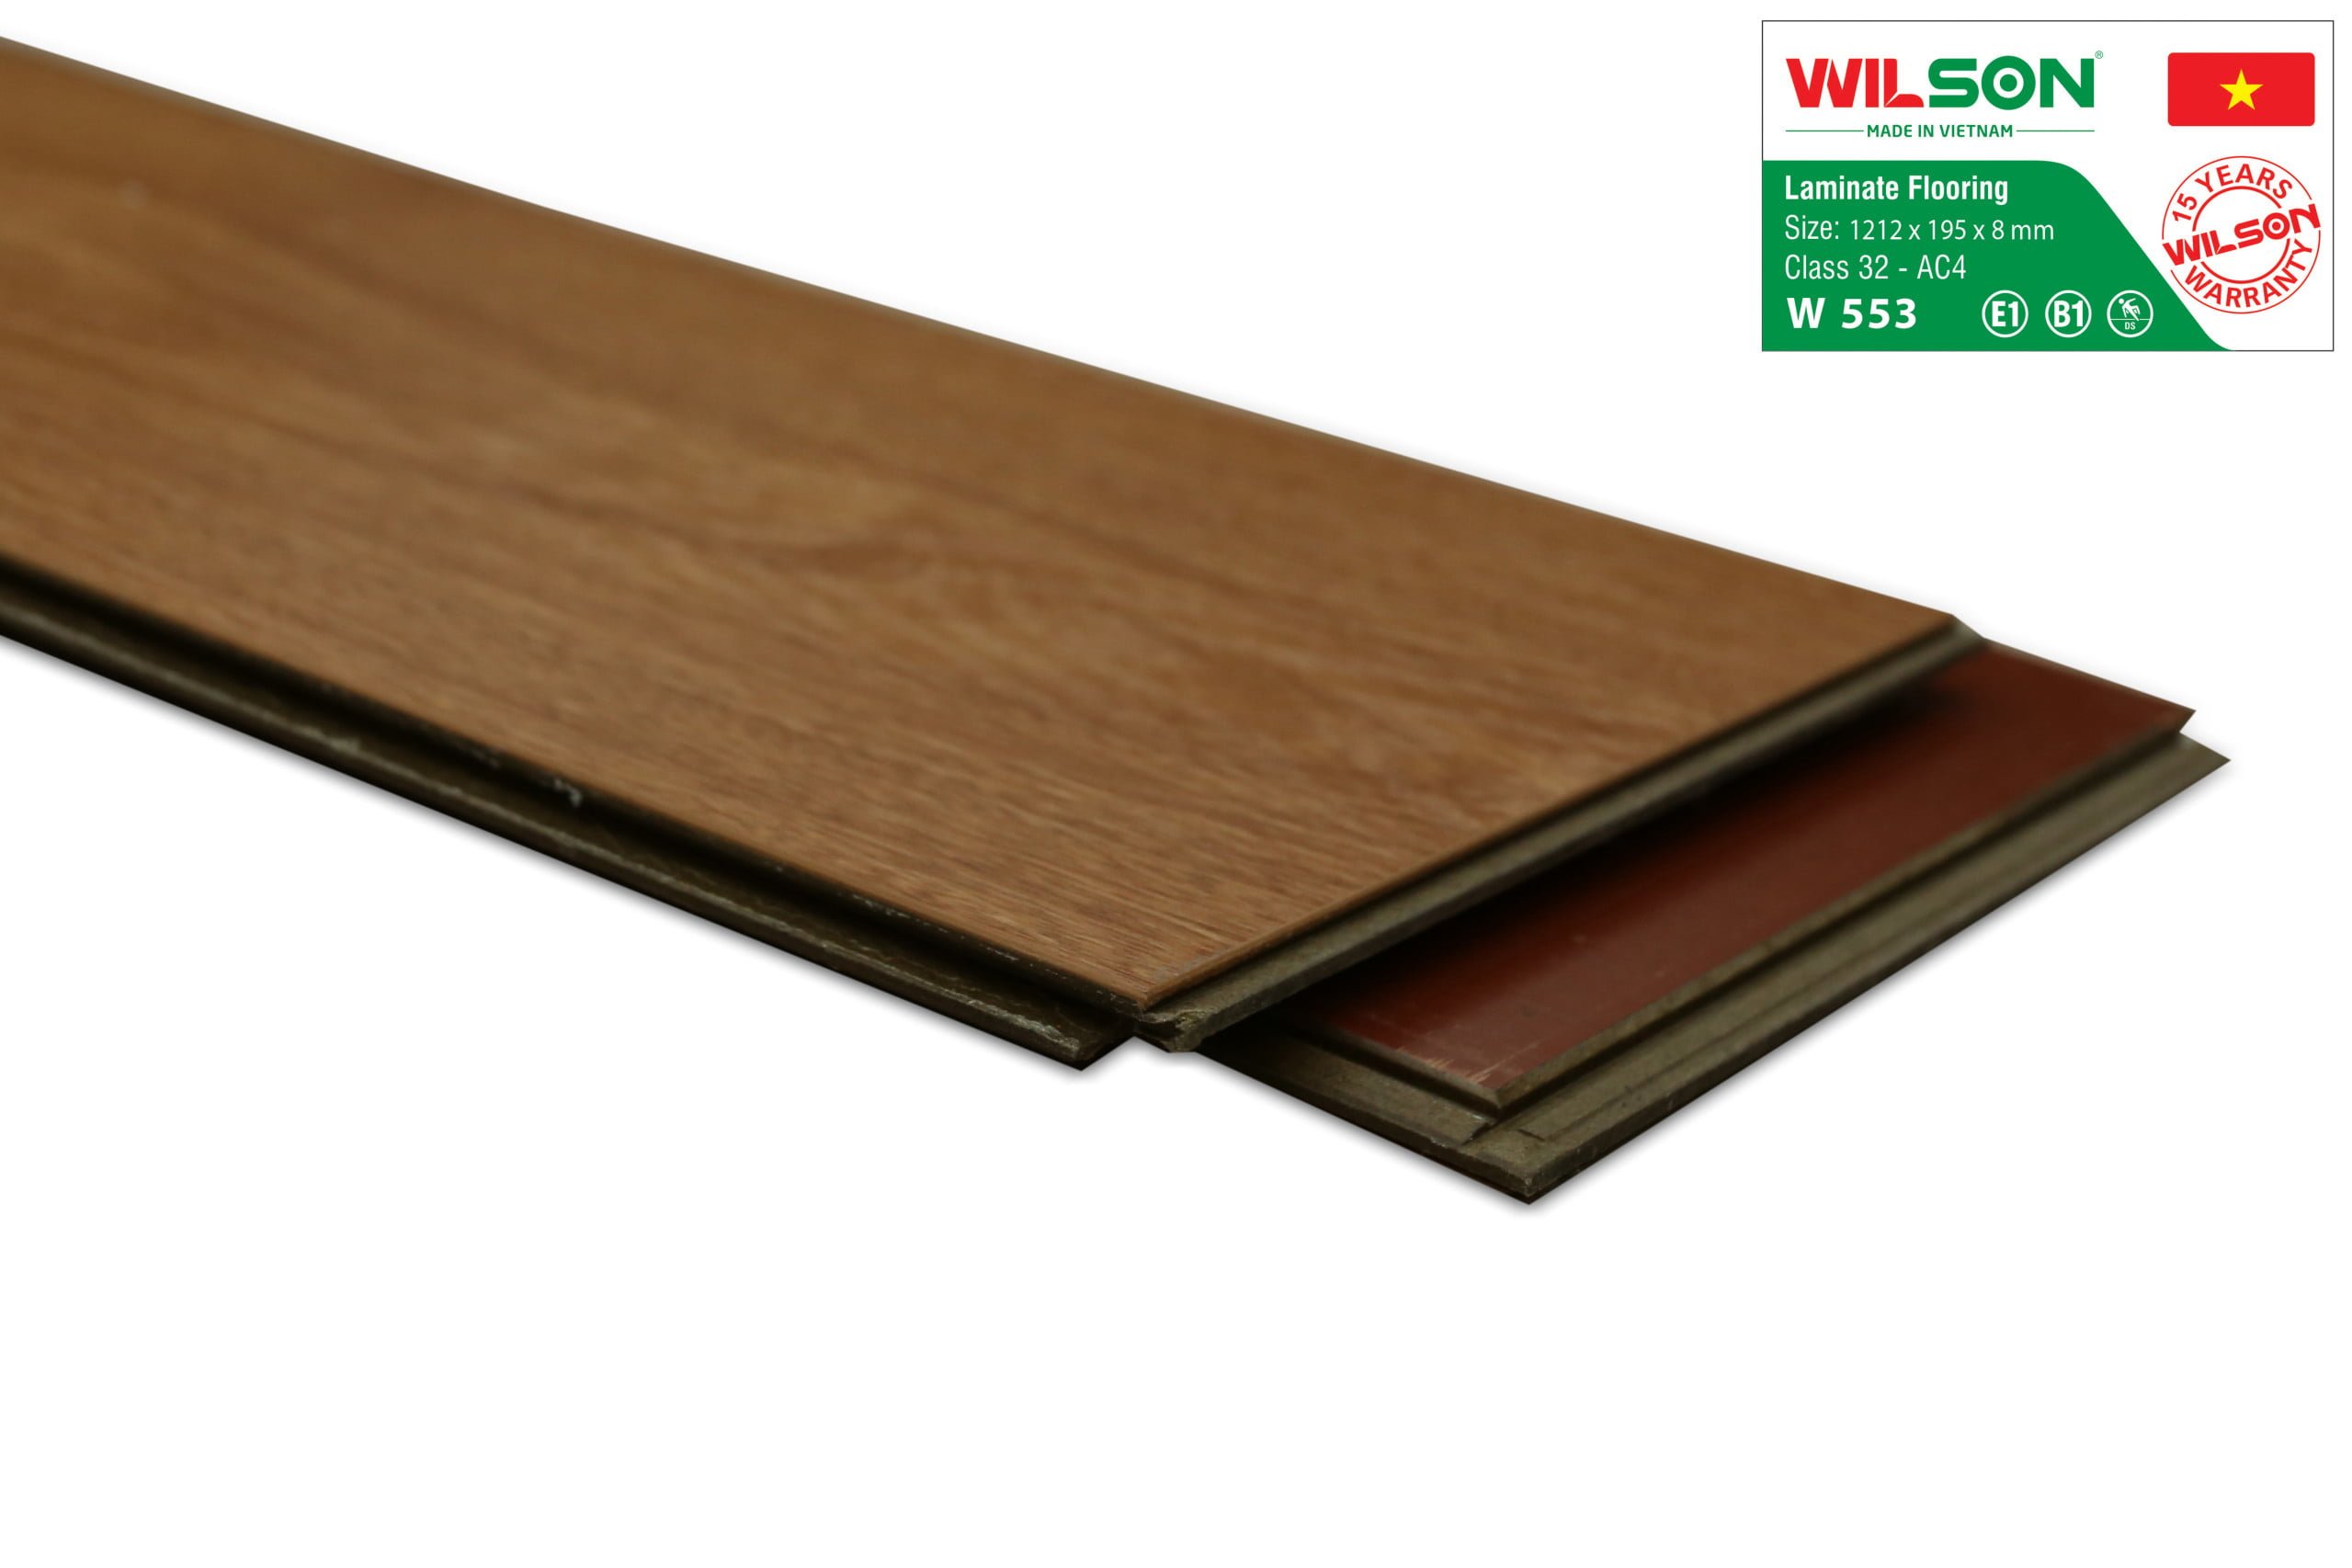 sàn gỗ wilson w553 tại tổng kho sàn gỗ an pha